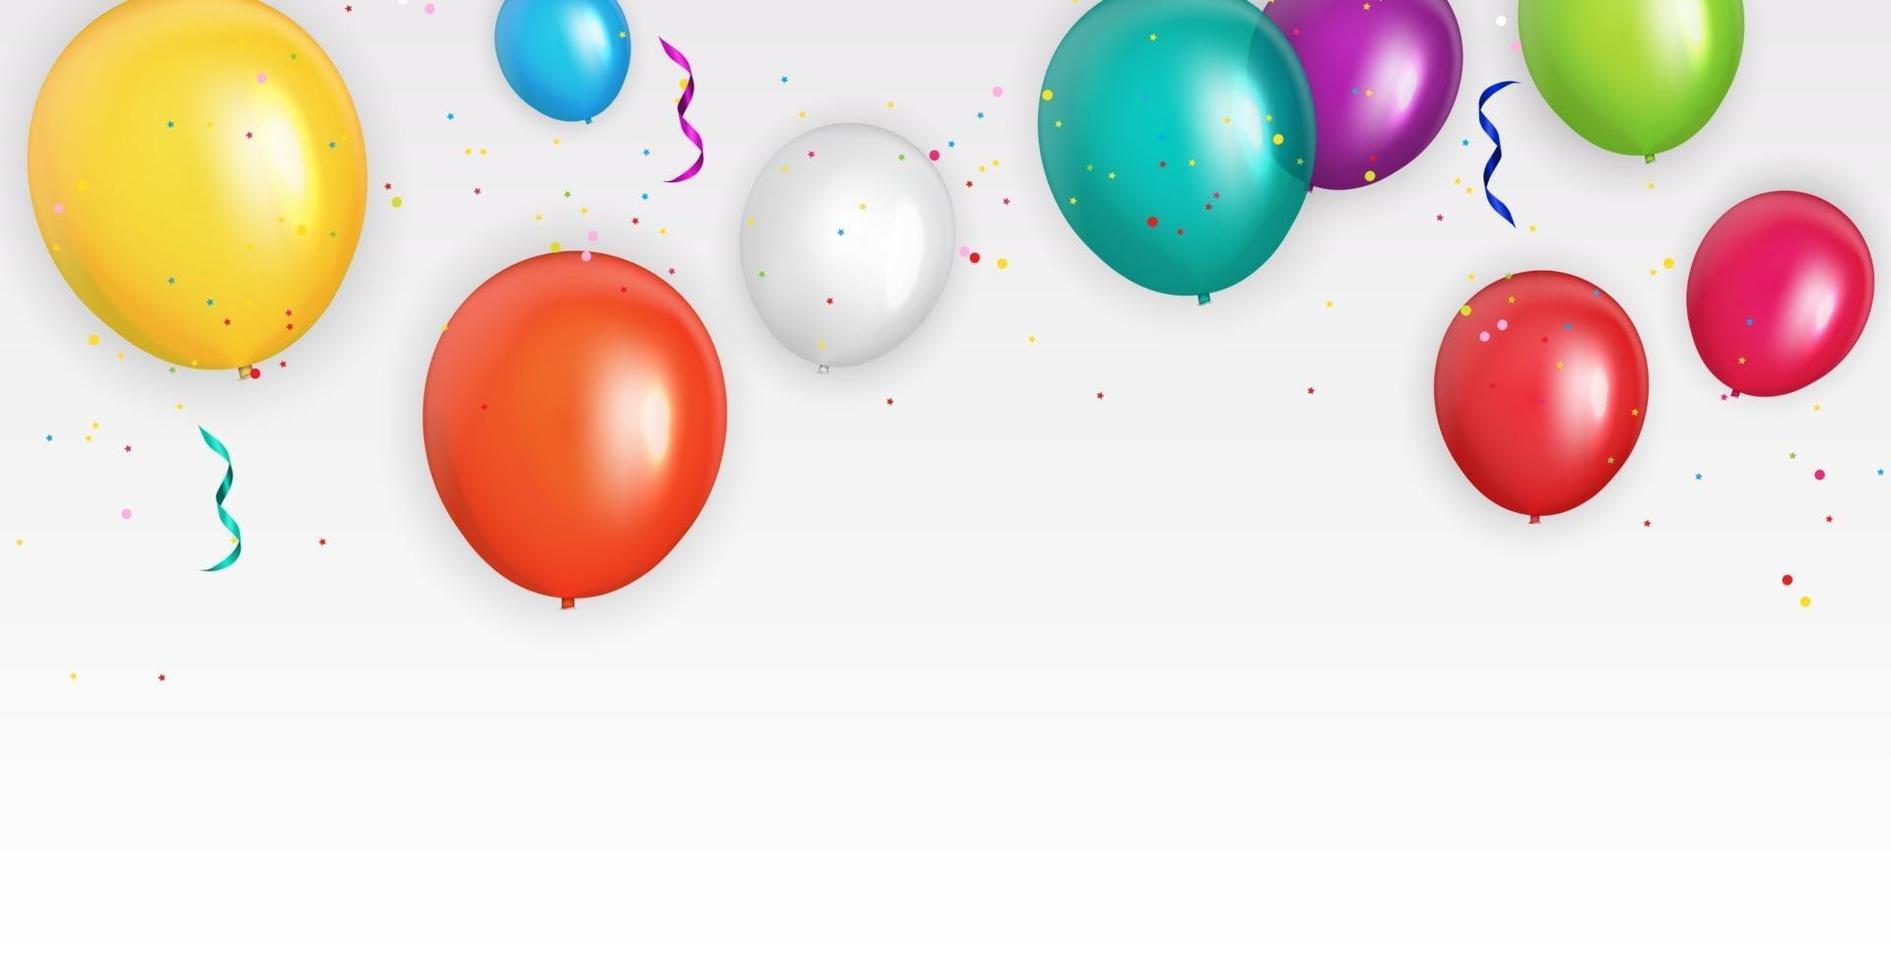 Grupo de fondo de globos de helio brillante de color. conjunto de globos para cumpleaños, aniversario, decoraciones para fiestas de celebración. ilustración vectorial vector